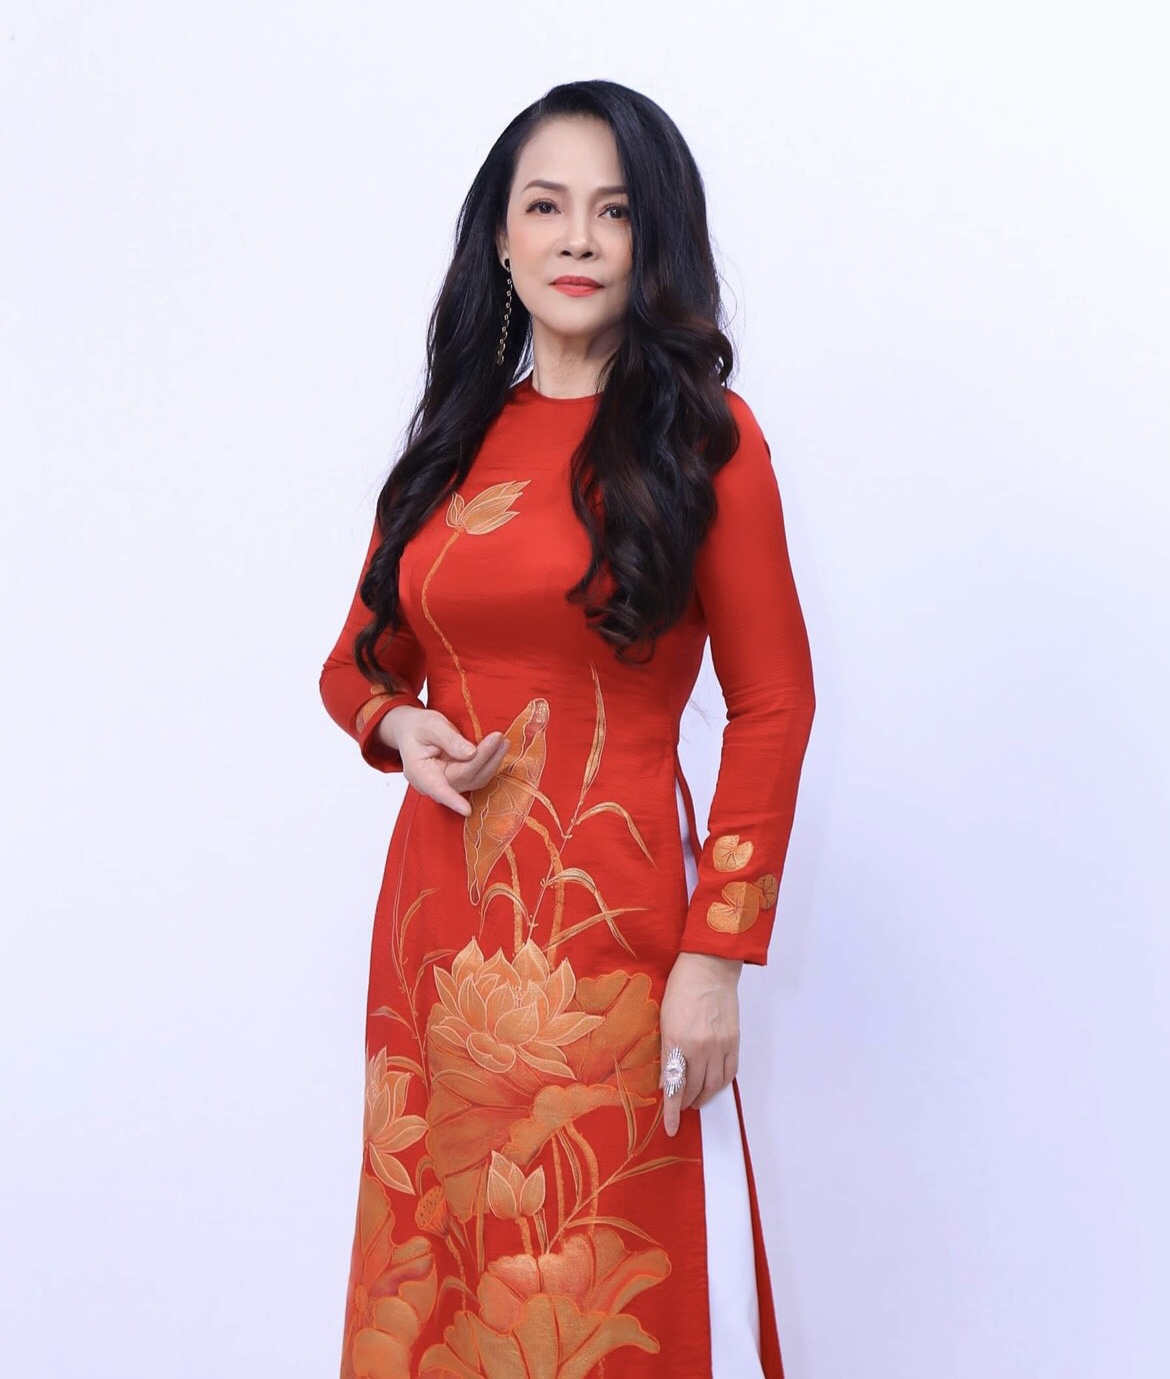 Đời thăng trầm của nữ ca sĩ được Trịnh Công Sơn chọn kế thừa Khánh Ly - 1